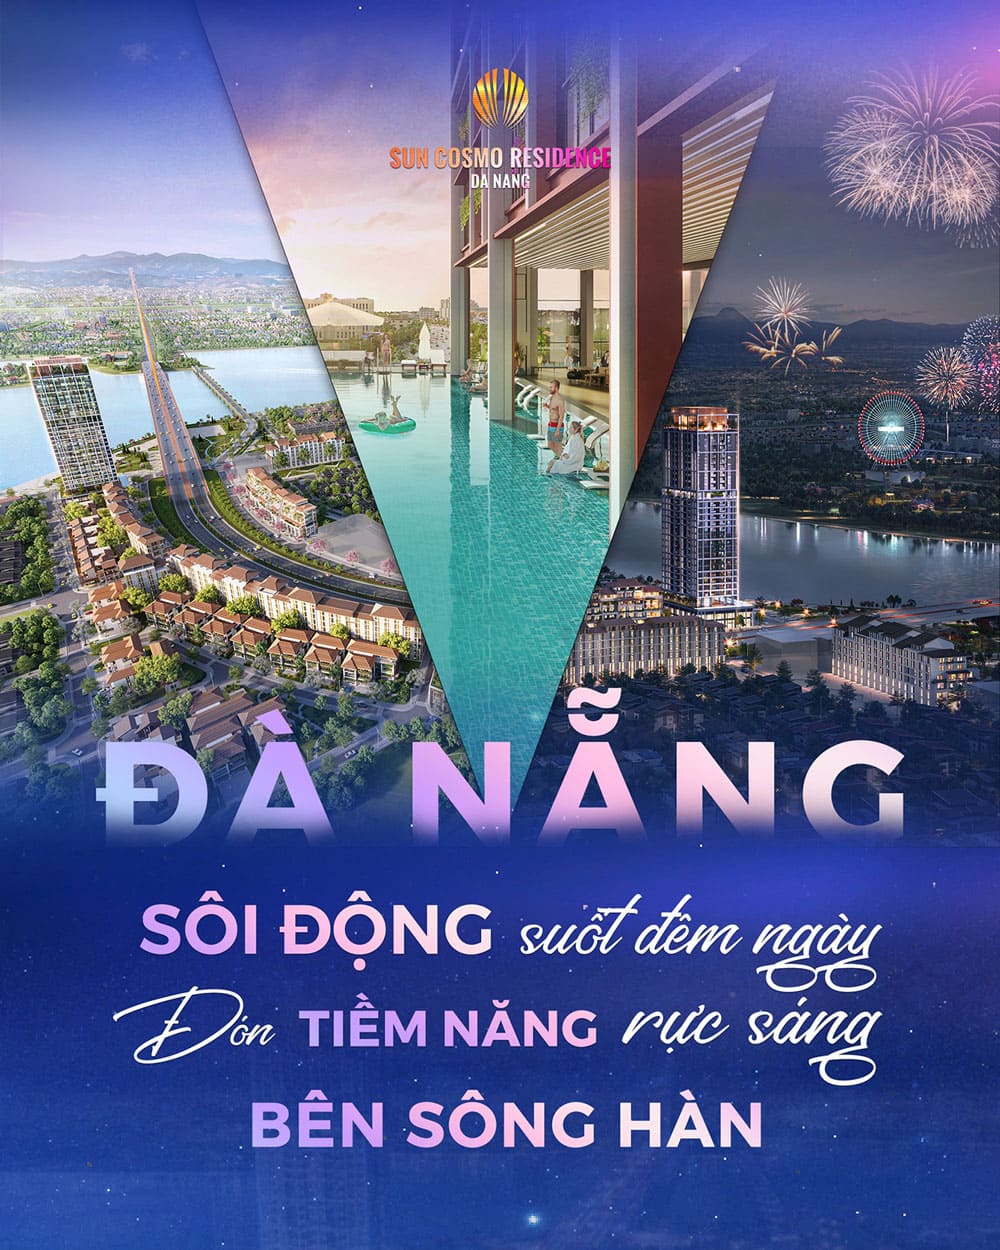 Dự án Sun Cosmo Residence Đà Nẵng được phát triển bởi tập đoàn Sun Group.